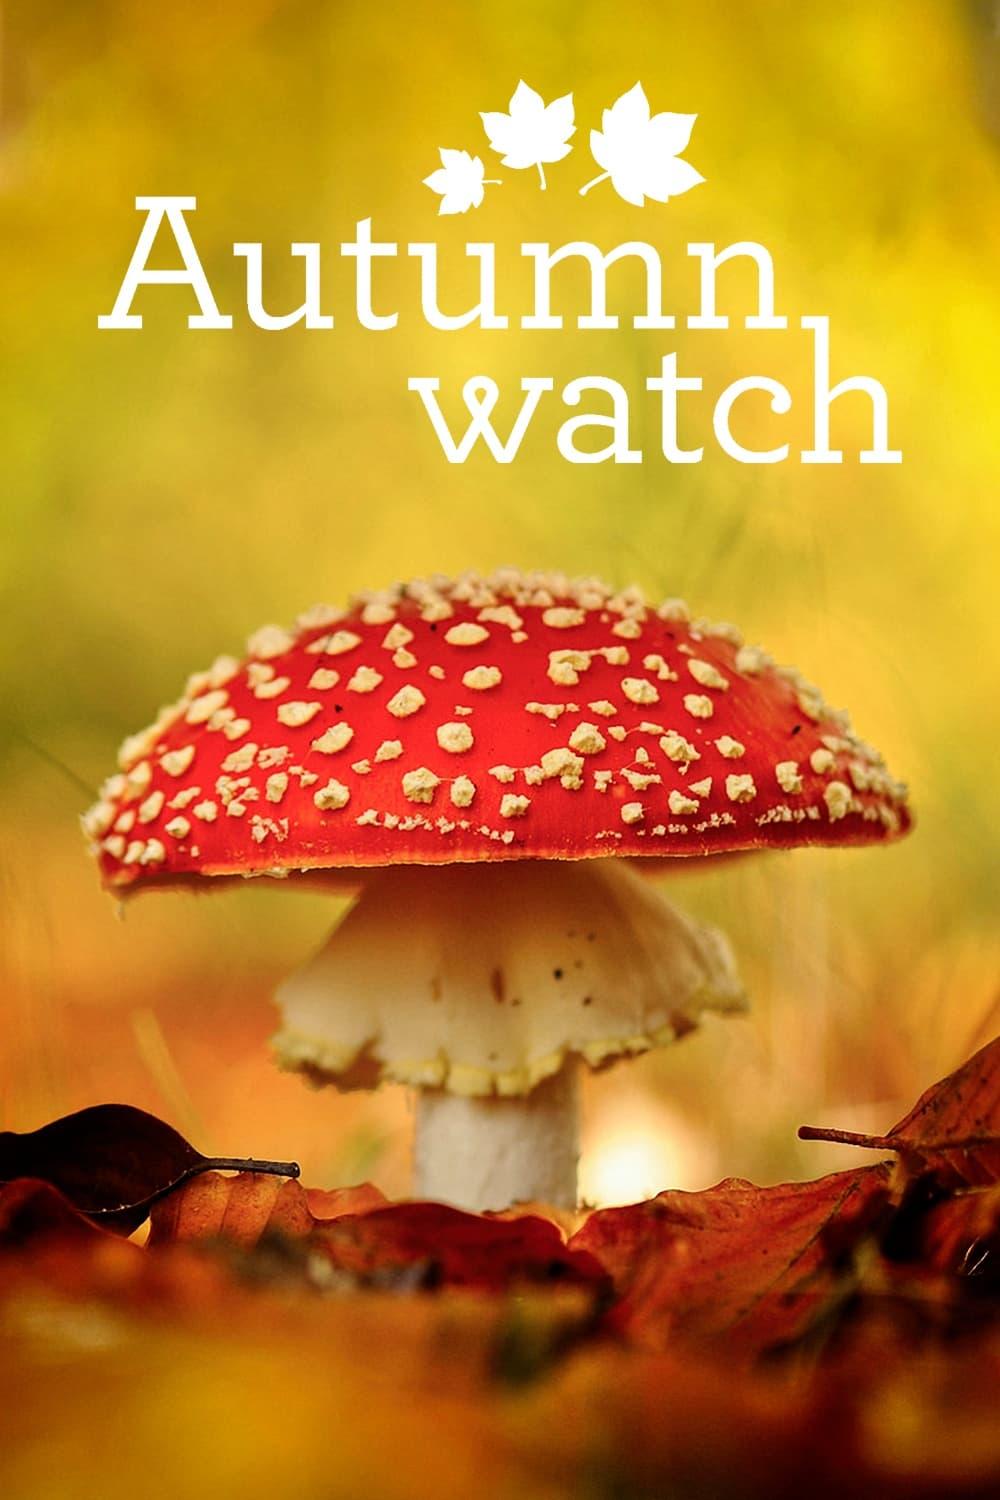 Autumnwatch poster